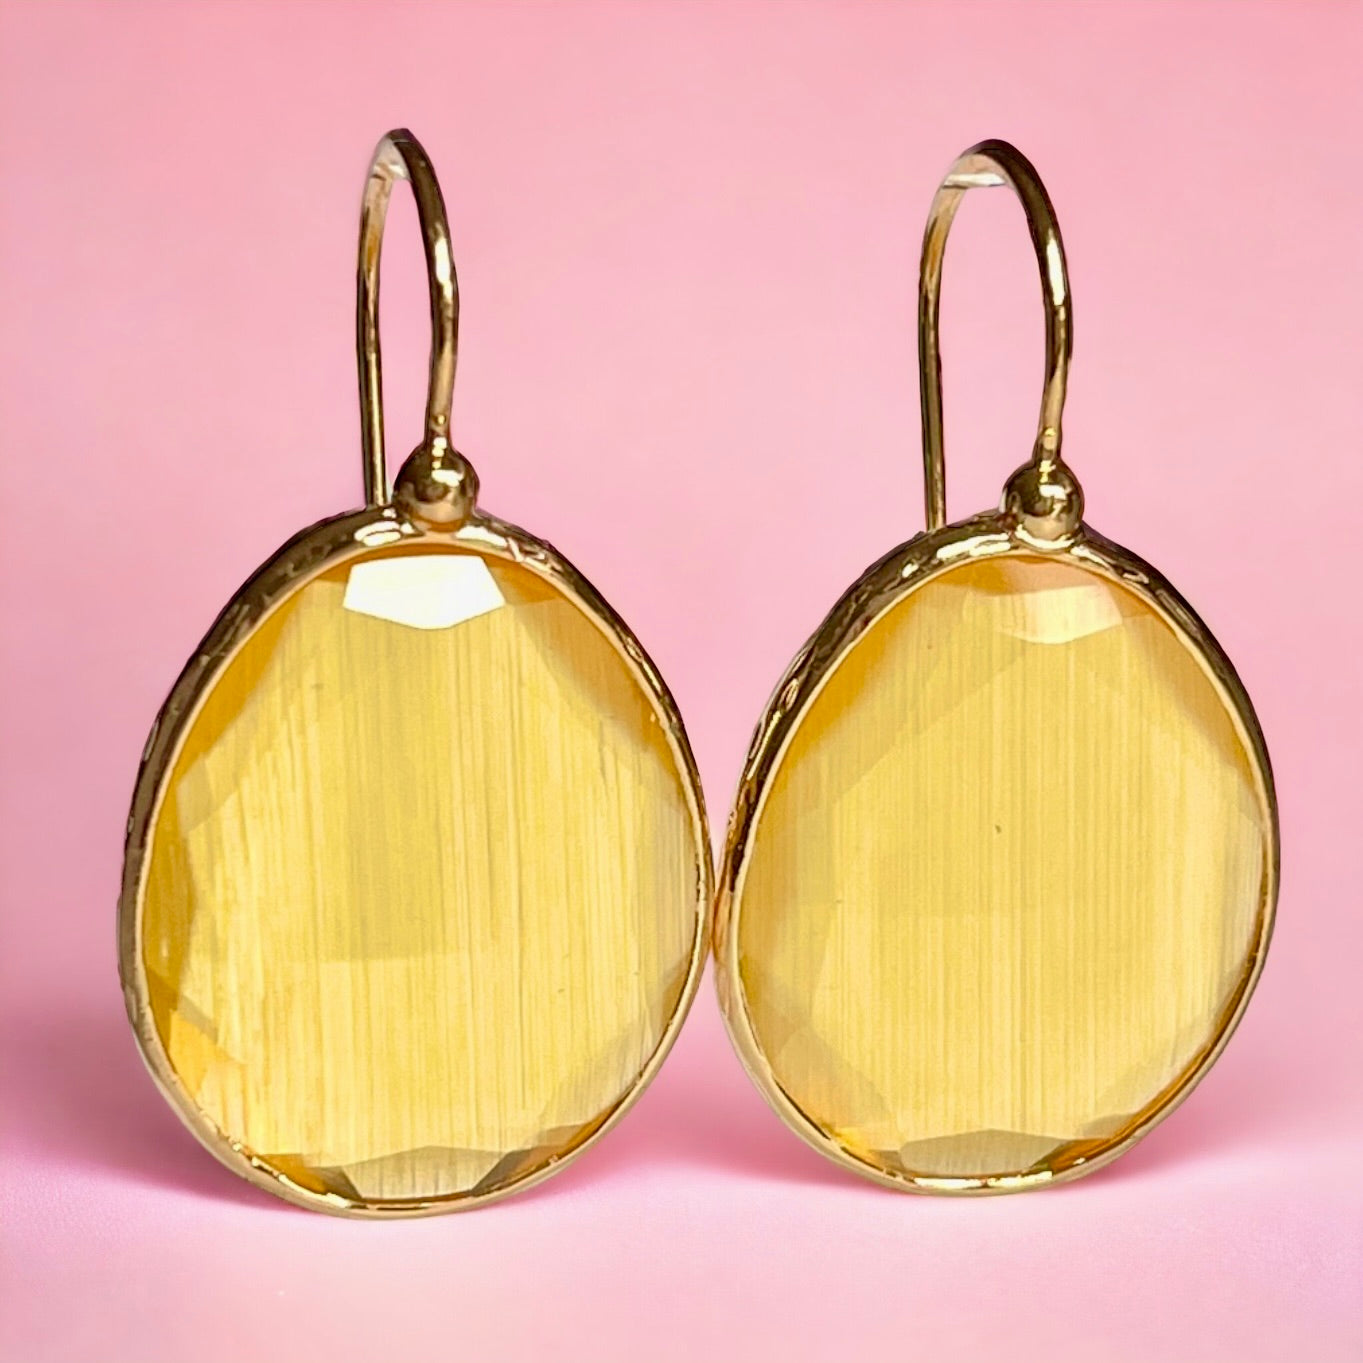 Boucles d’oreilles "MIAMI" pierre naturelle Agate jaune dorées or fin